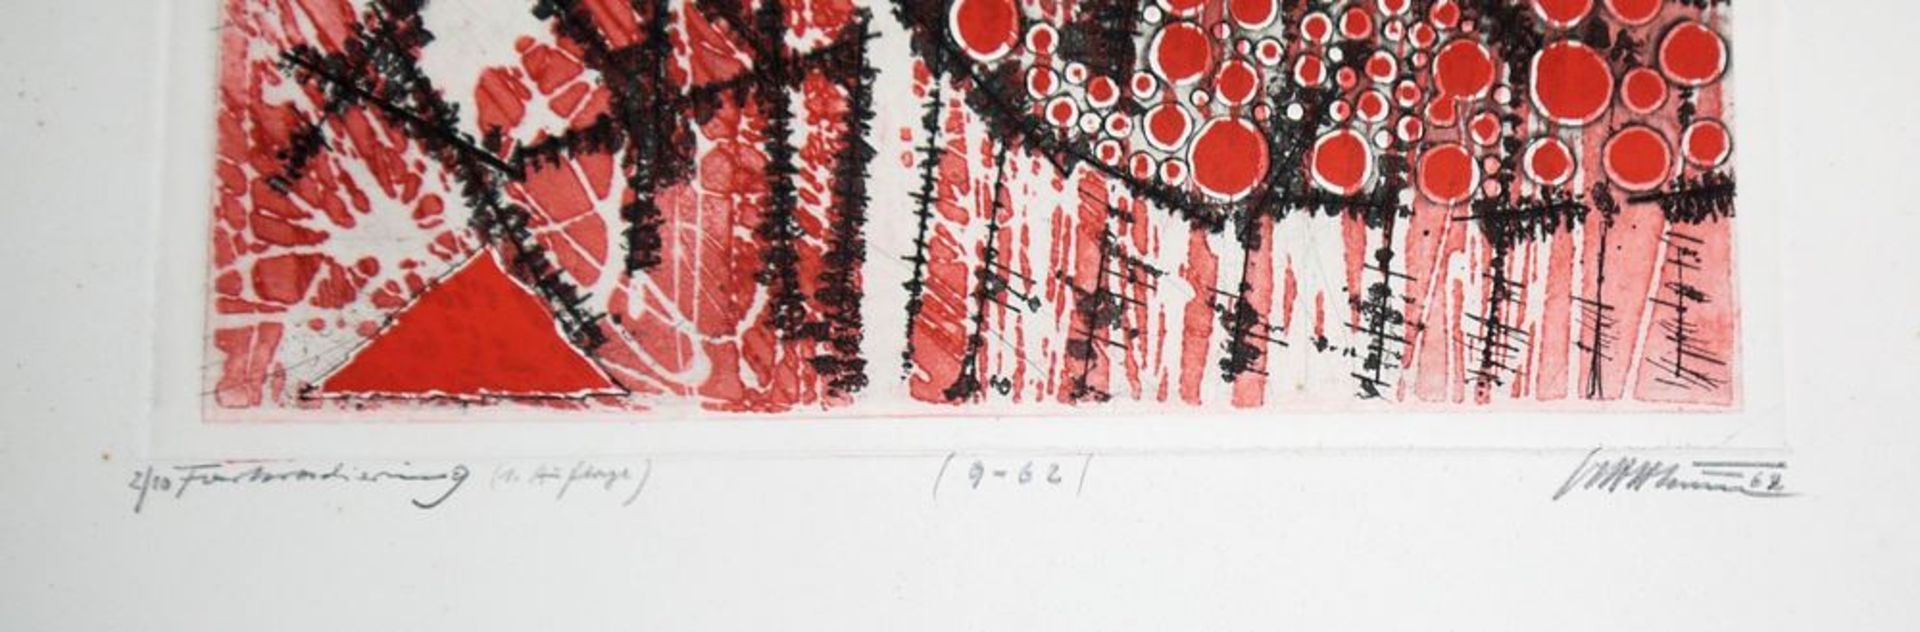 Volkmar Haase, Abstrakte Kompositionen, 2 signierte Farbradierungen, o. Rahmen - Image 3 of 5